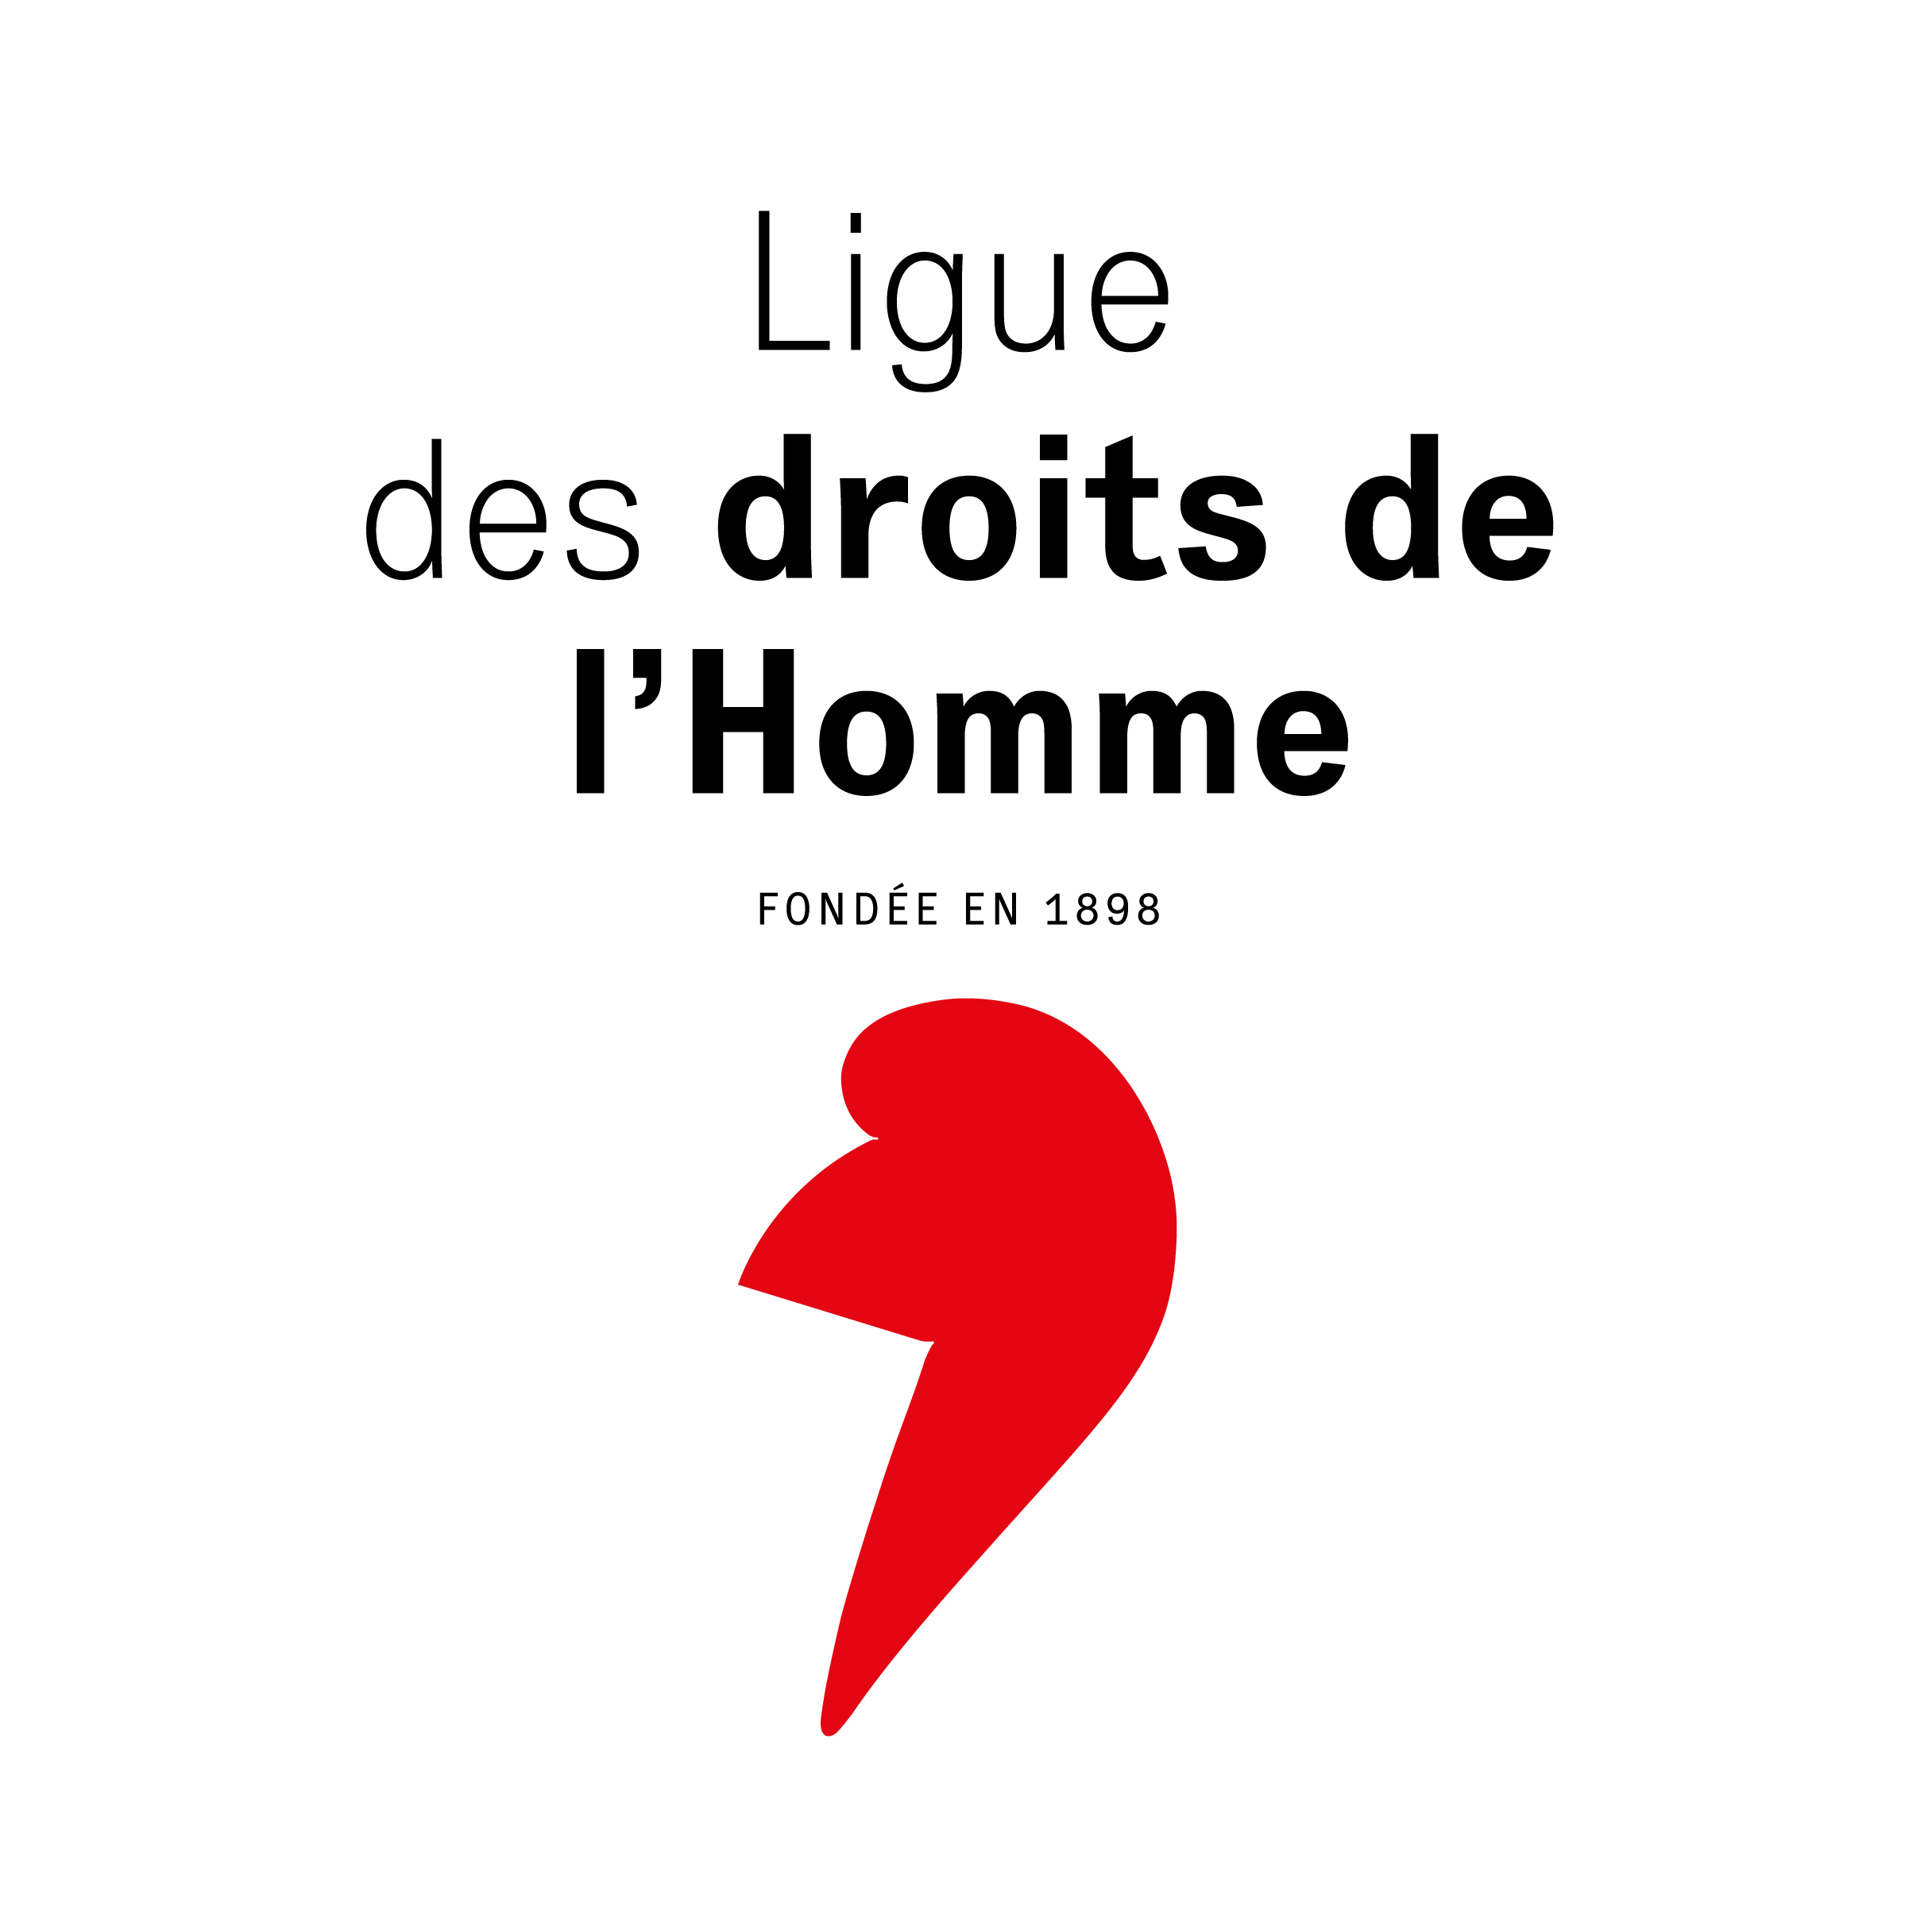 Ligue des droits de l'Homme, section de Nantes (LDH)